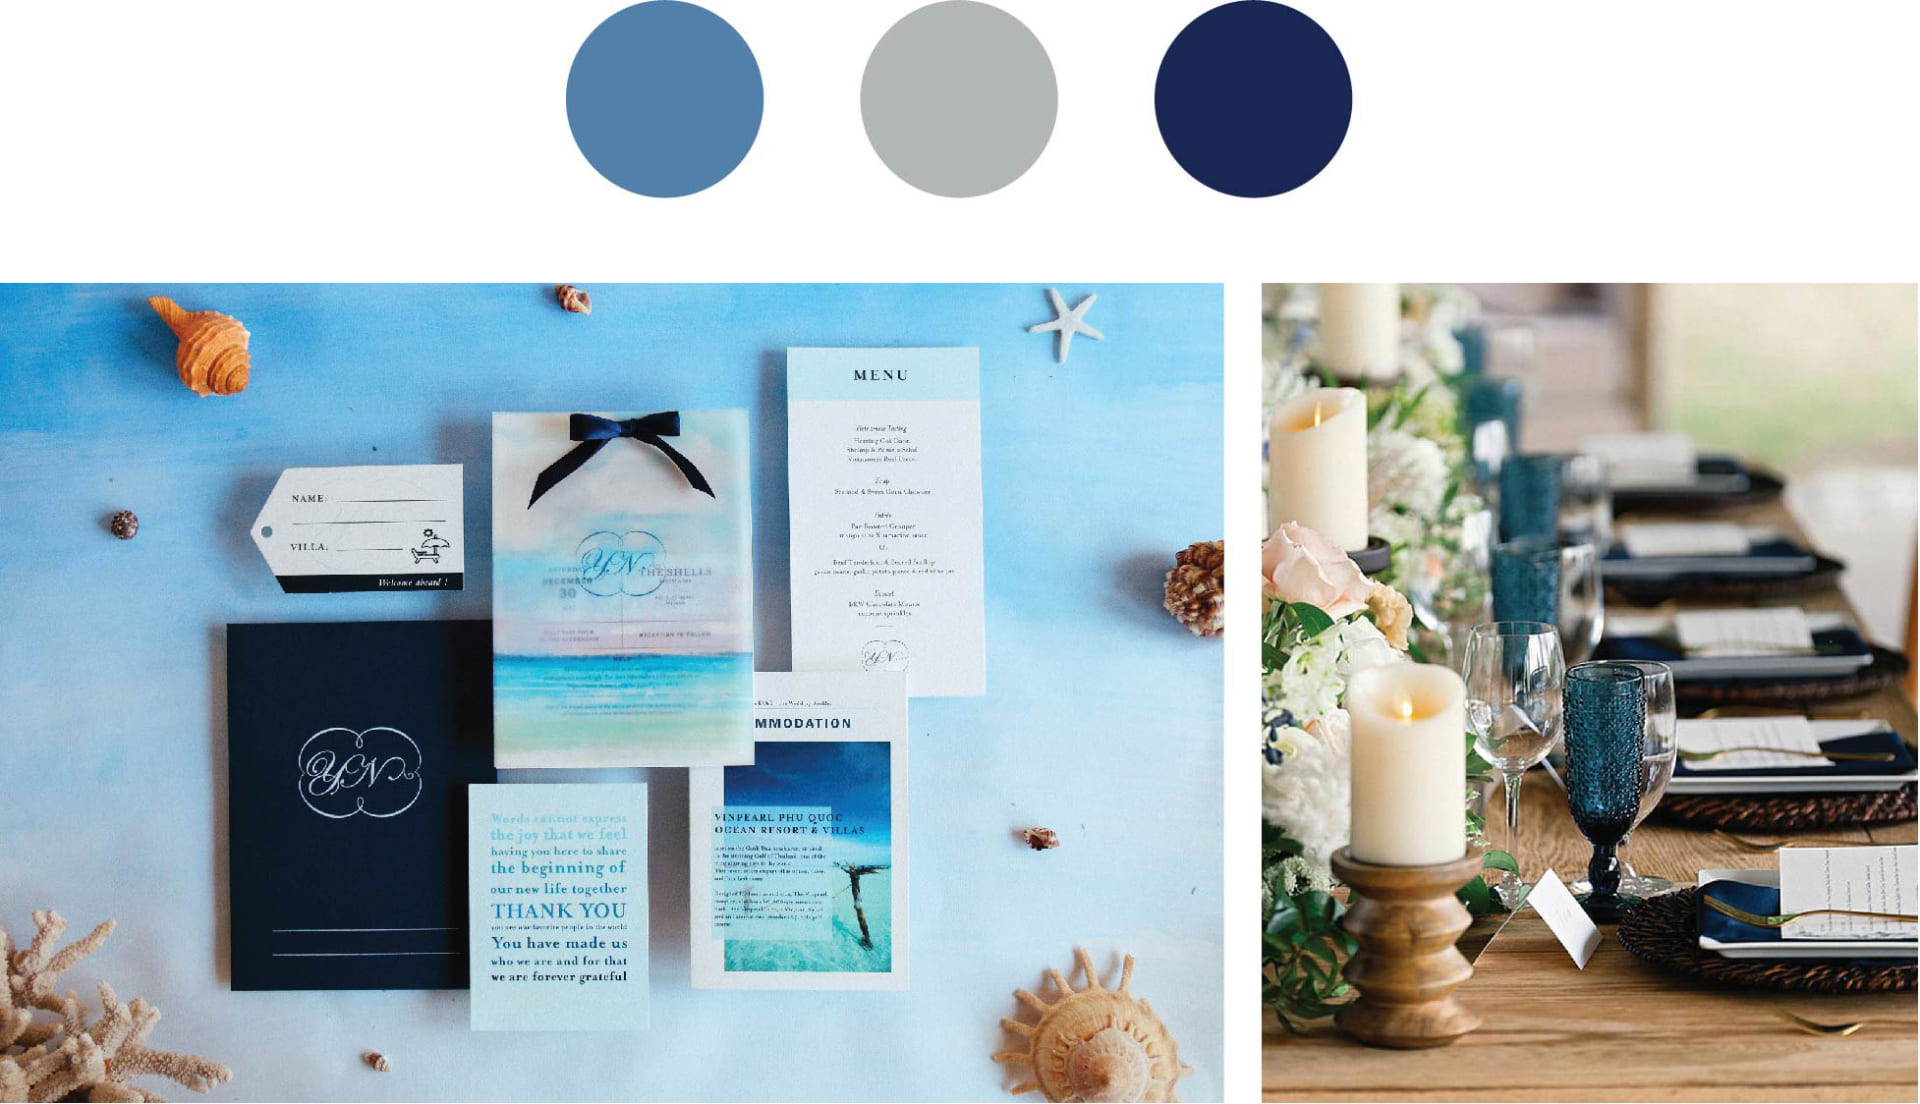 Ảnh trái: Traqué Wedding Paper - Ảnh phải: Pinterest